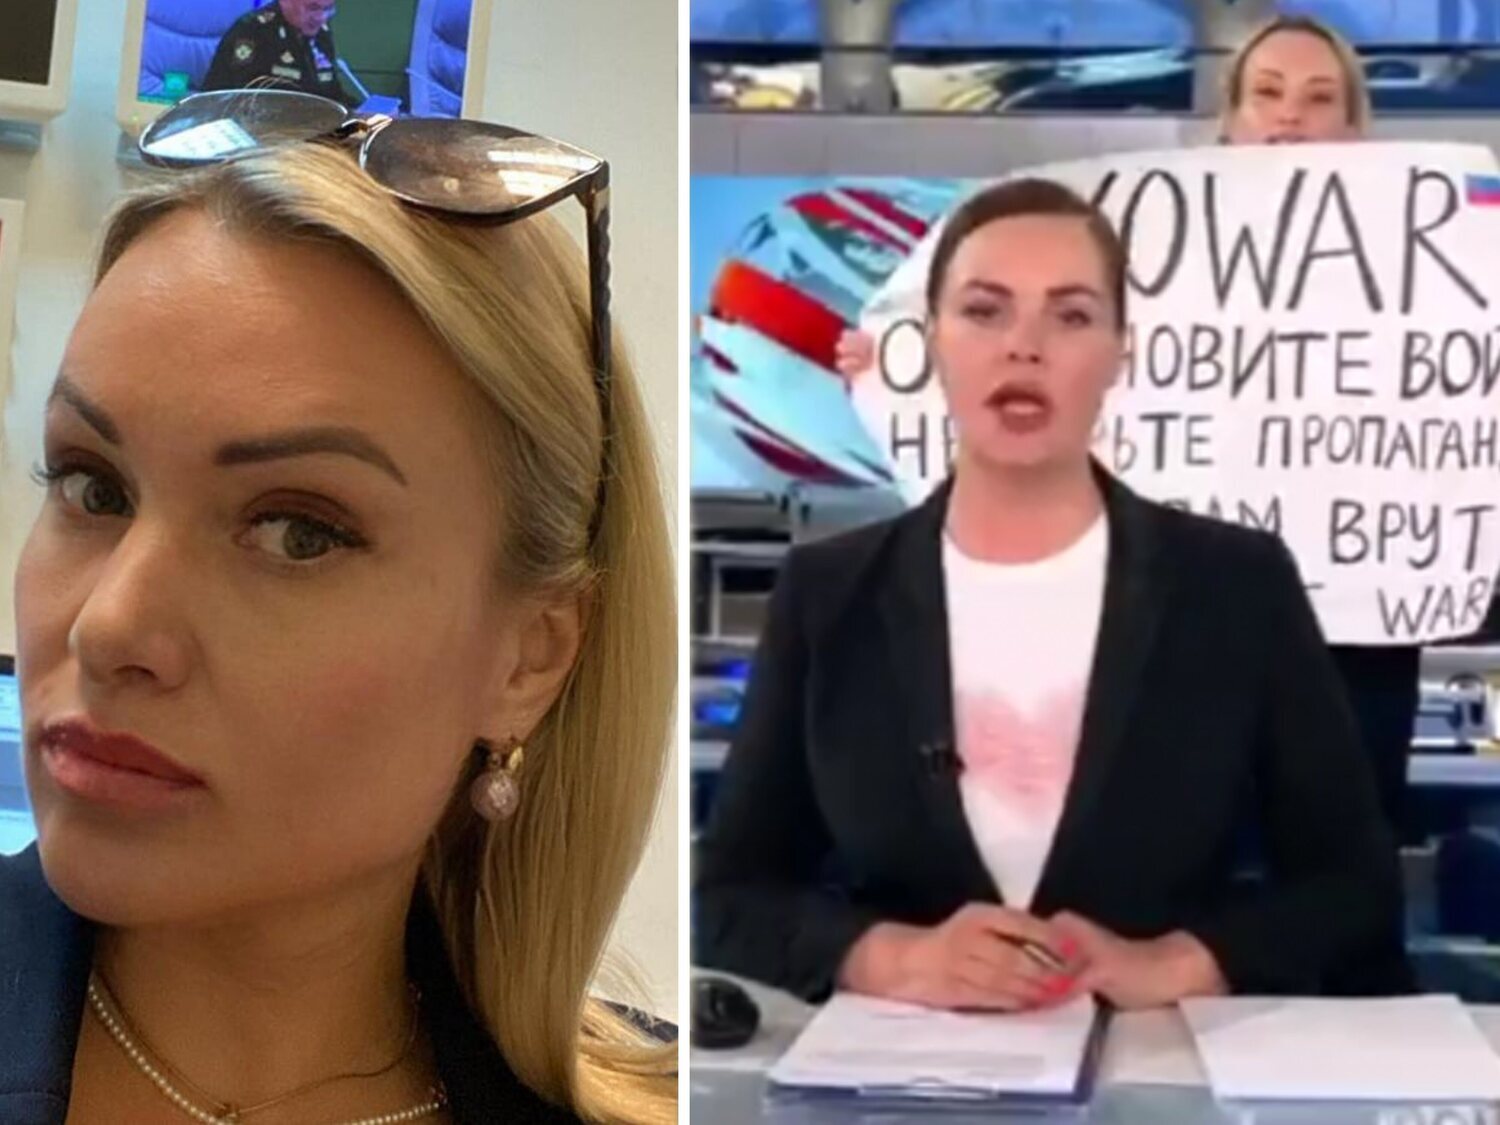 Condenan a ocho años y medio de prisión a la periodista rusa que protestó en directo contra la guerra de Ucrania